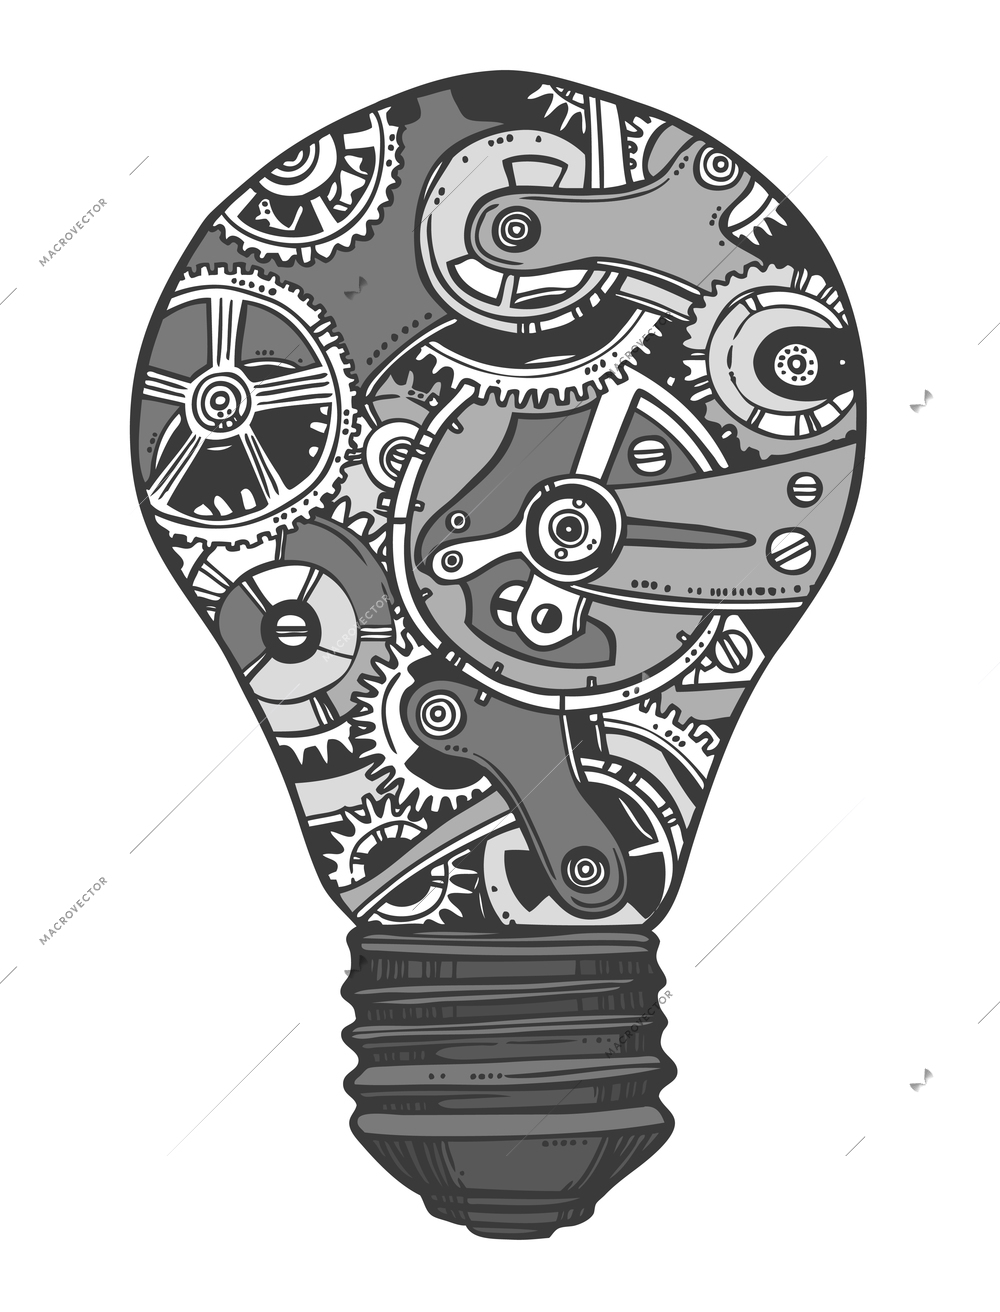 Sketch grunge cogwheel gears mechanisms lightbulb isolated vector illustration